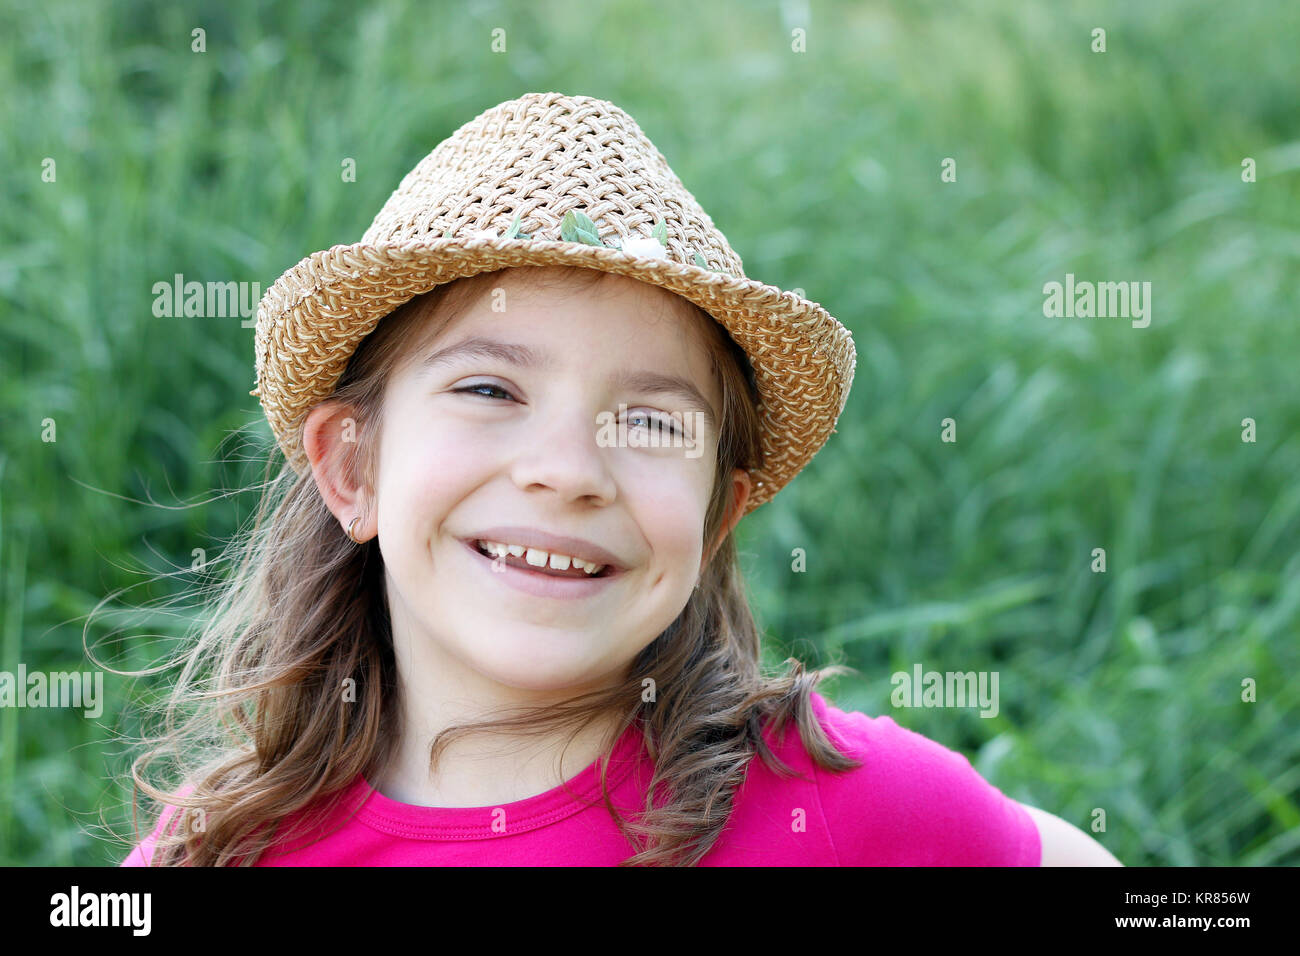 https://c8.alamy.com/comp/KR856W/happy-little-girl-with-straw-hat-portrait-KR856W.jpg